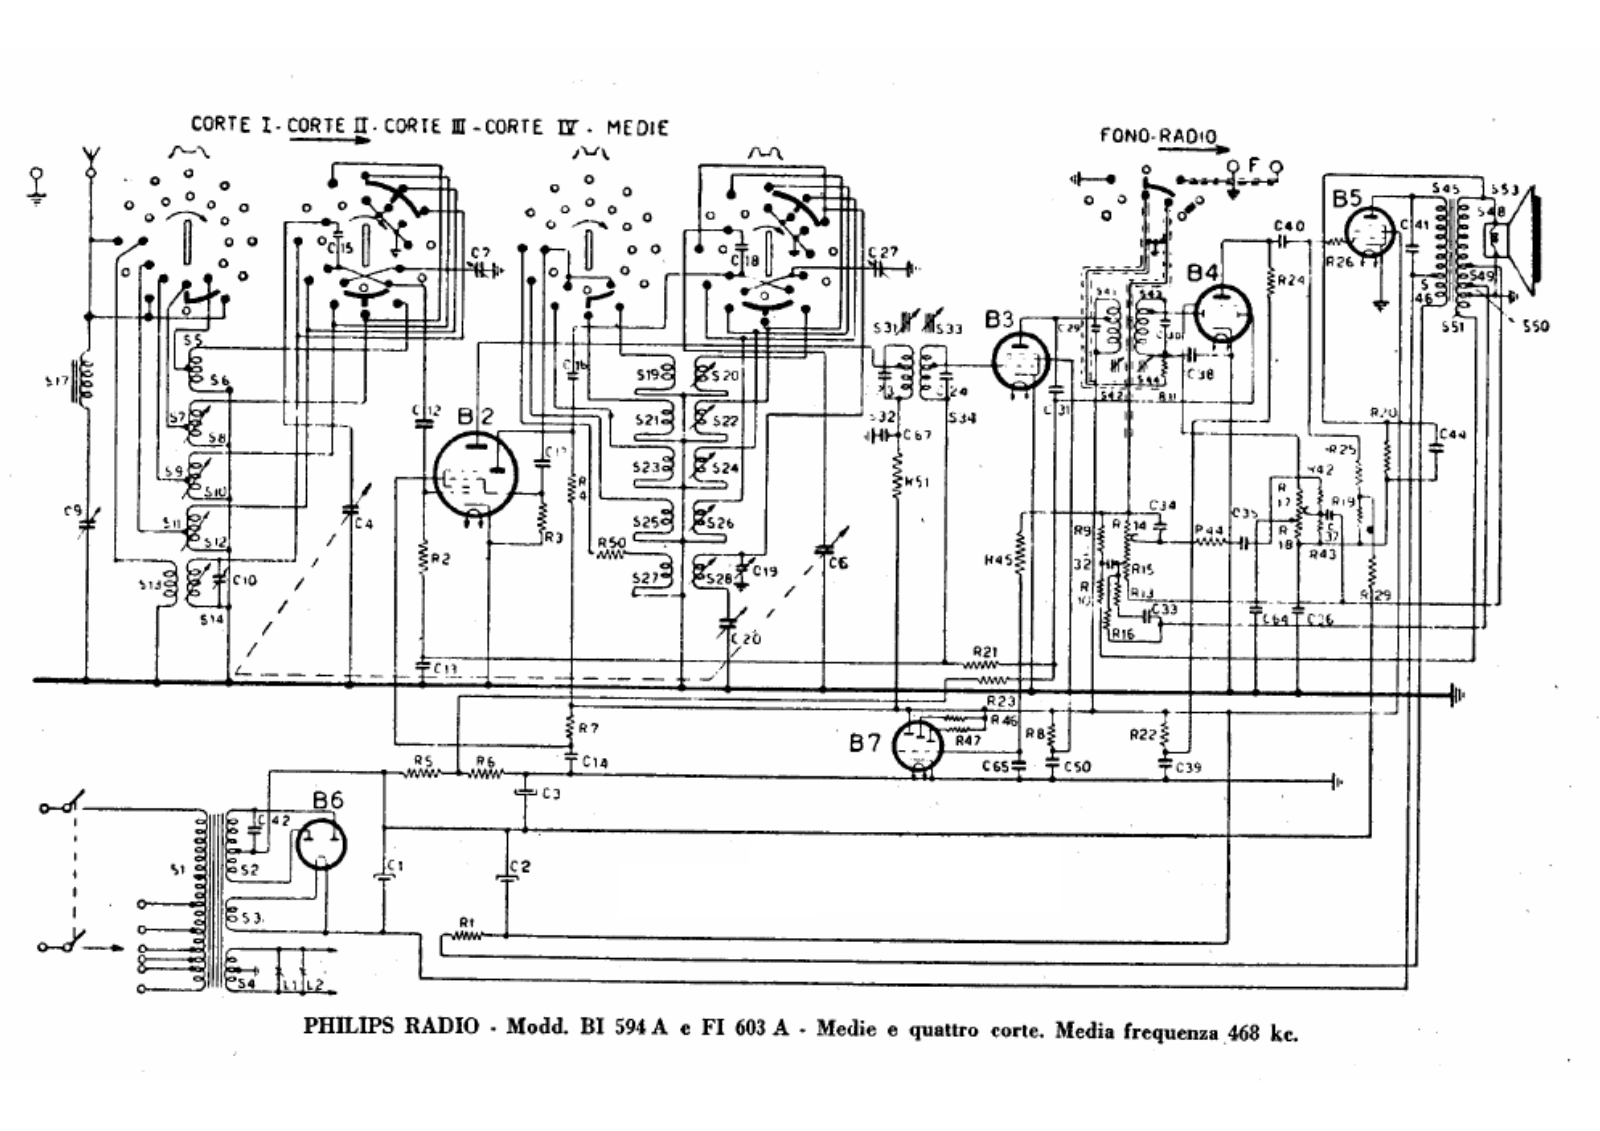 Philips bi594a, fi603a schematic